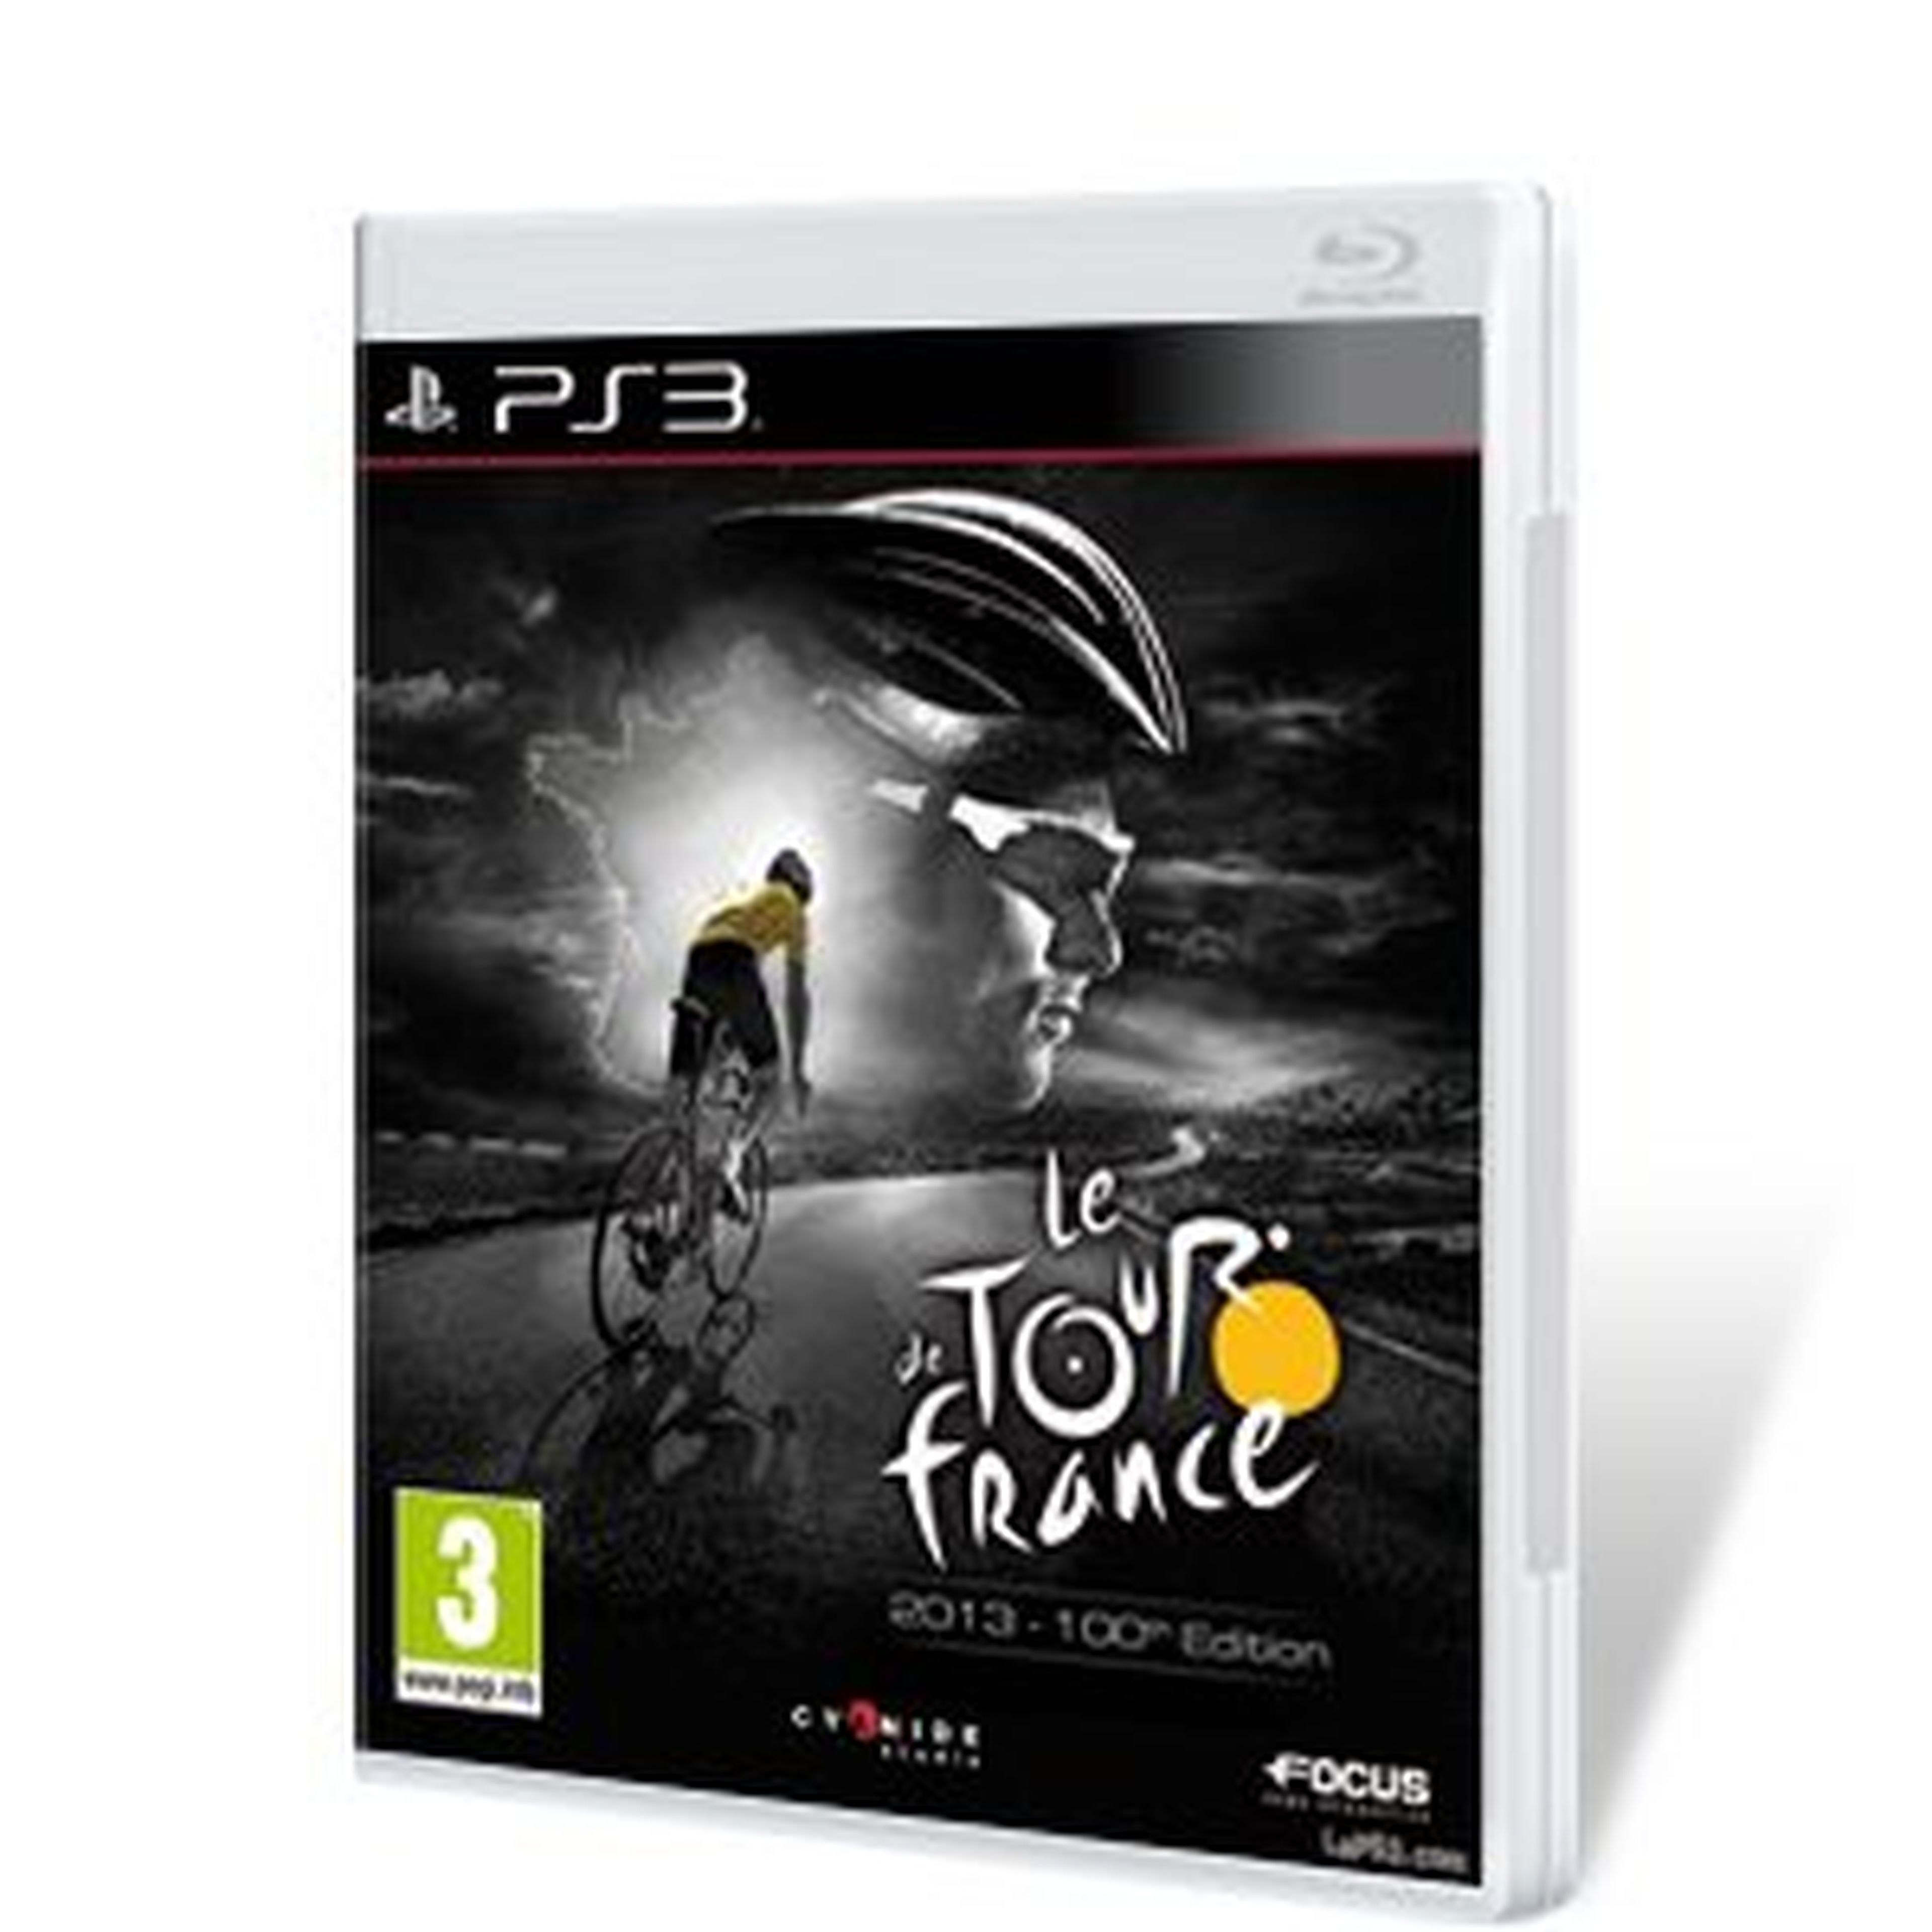 Le Tour de France 2013 para PS3